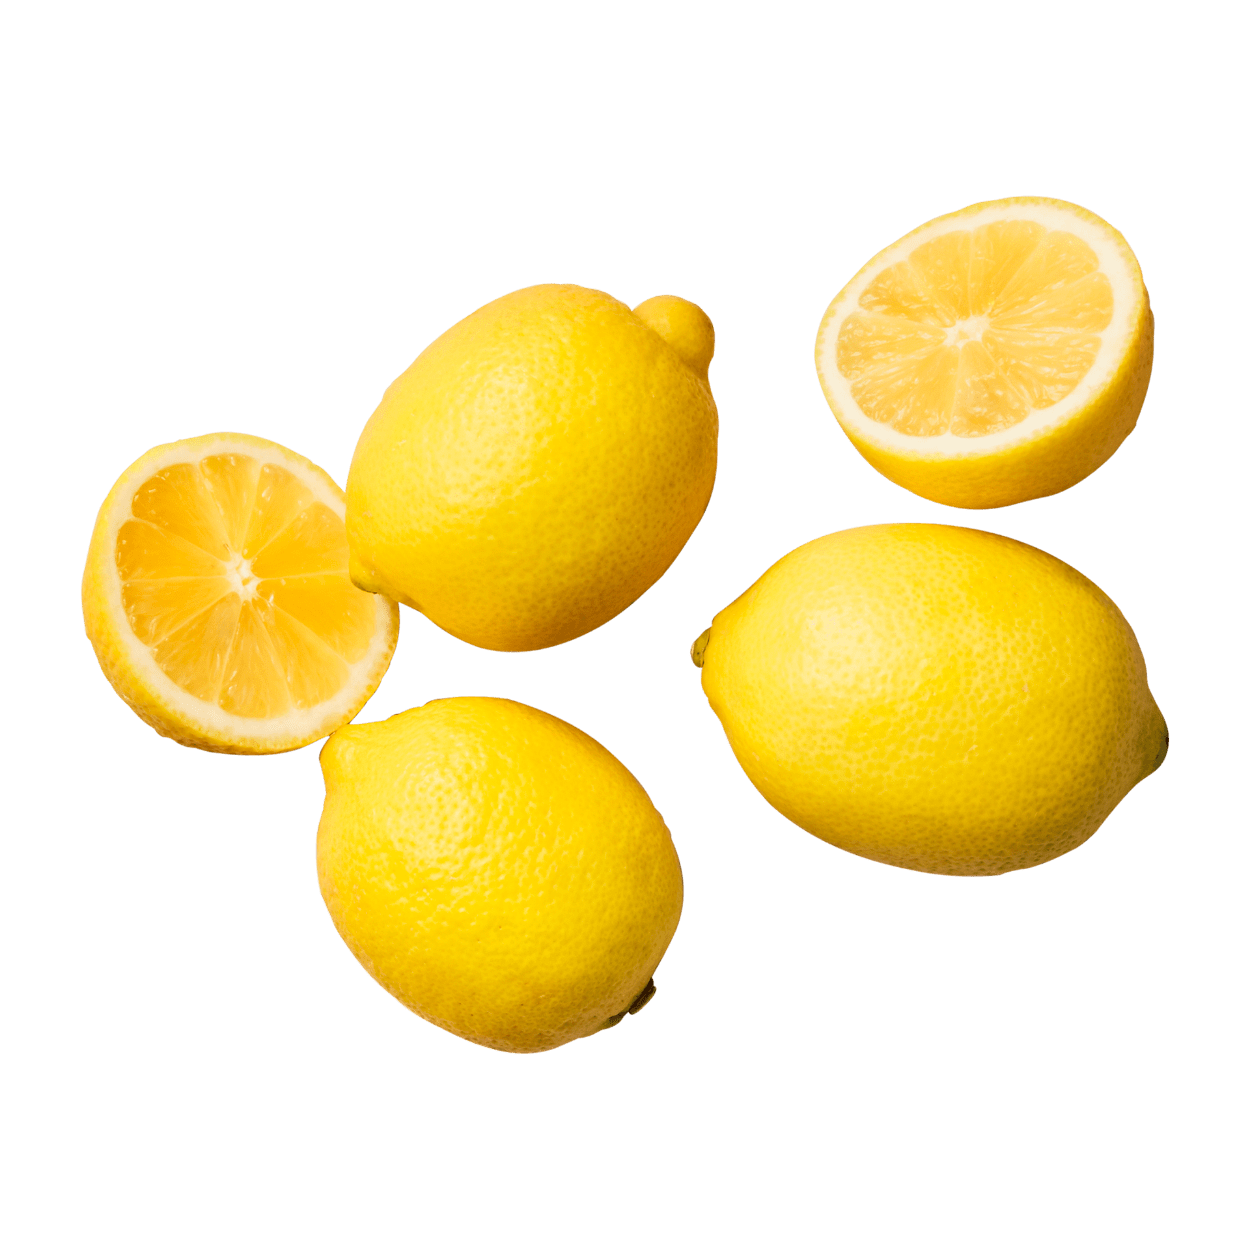 Nord bei ALDI Bio-Zitronen günstig